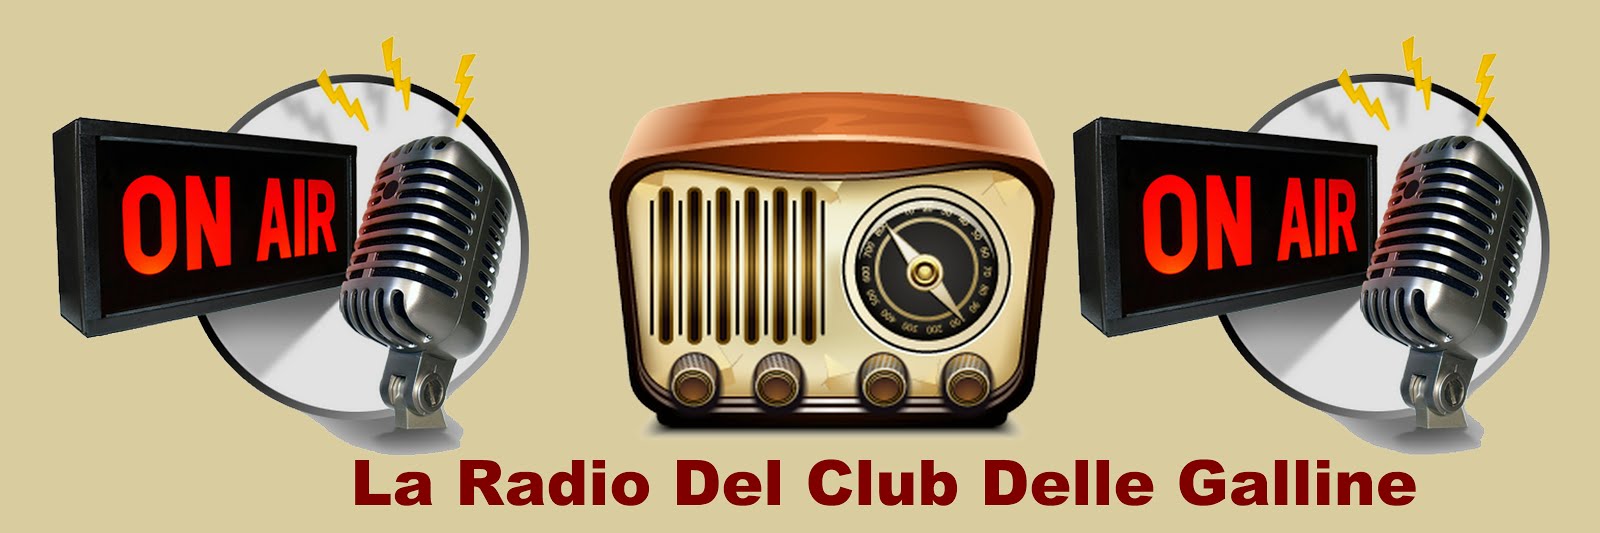 La Radio Del Club Delle Galline